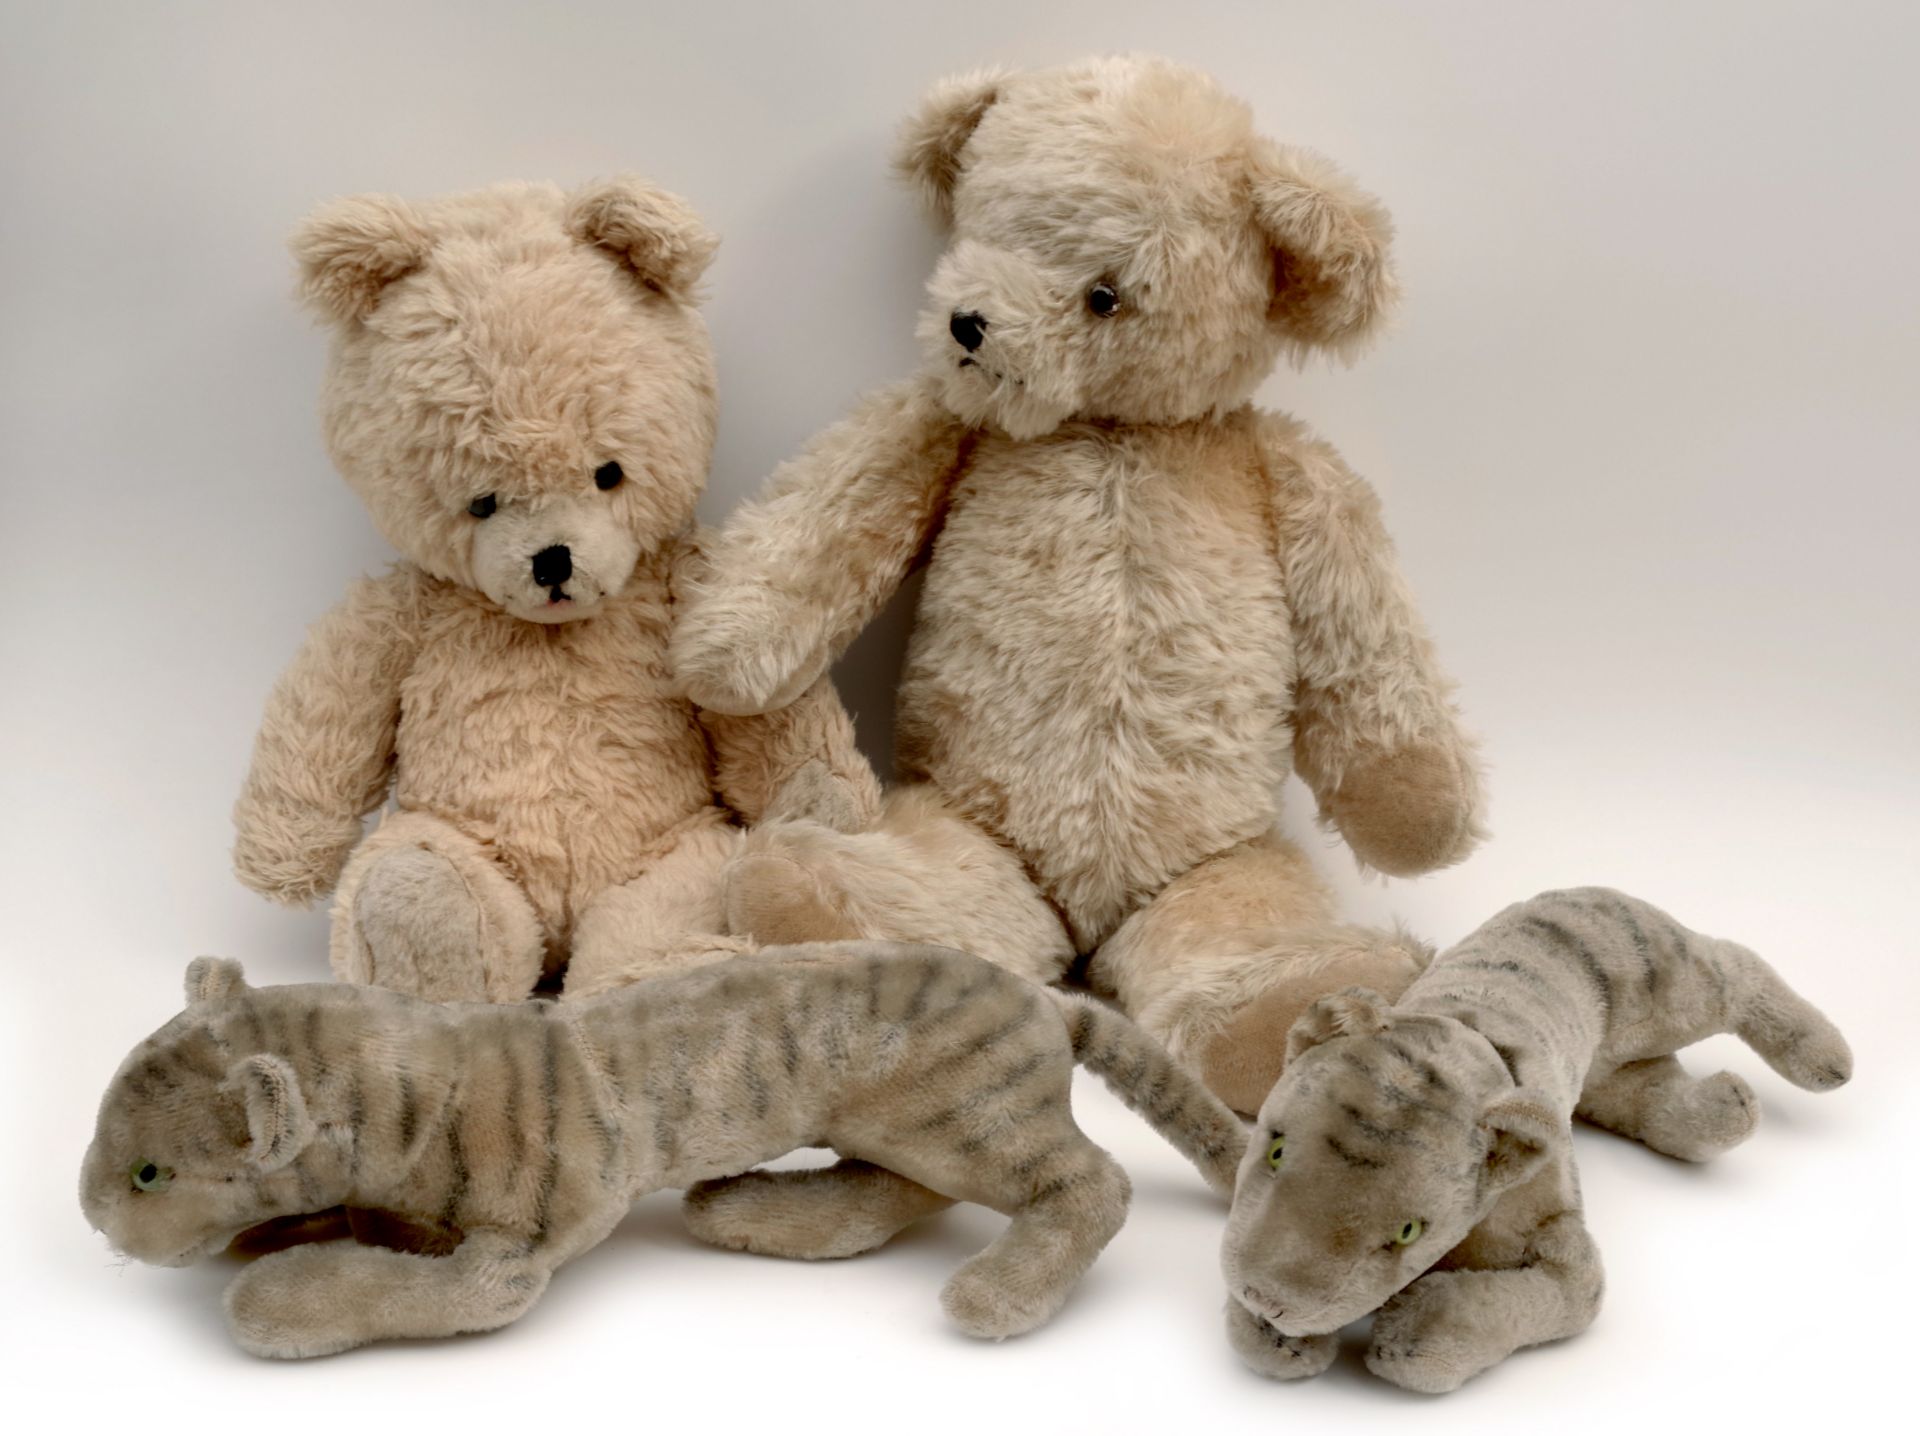 Zwei Tiger und zwei Teddy Bears